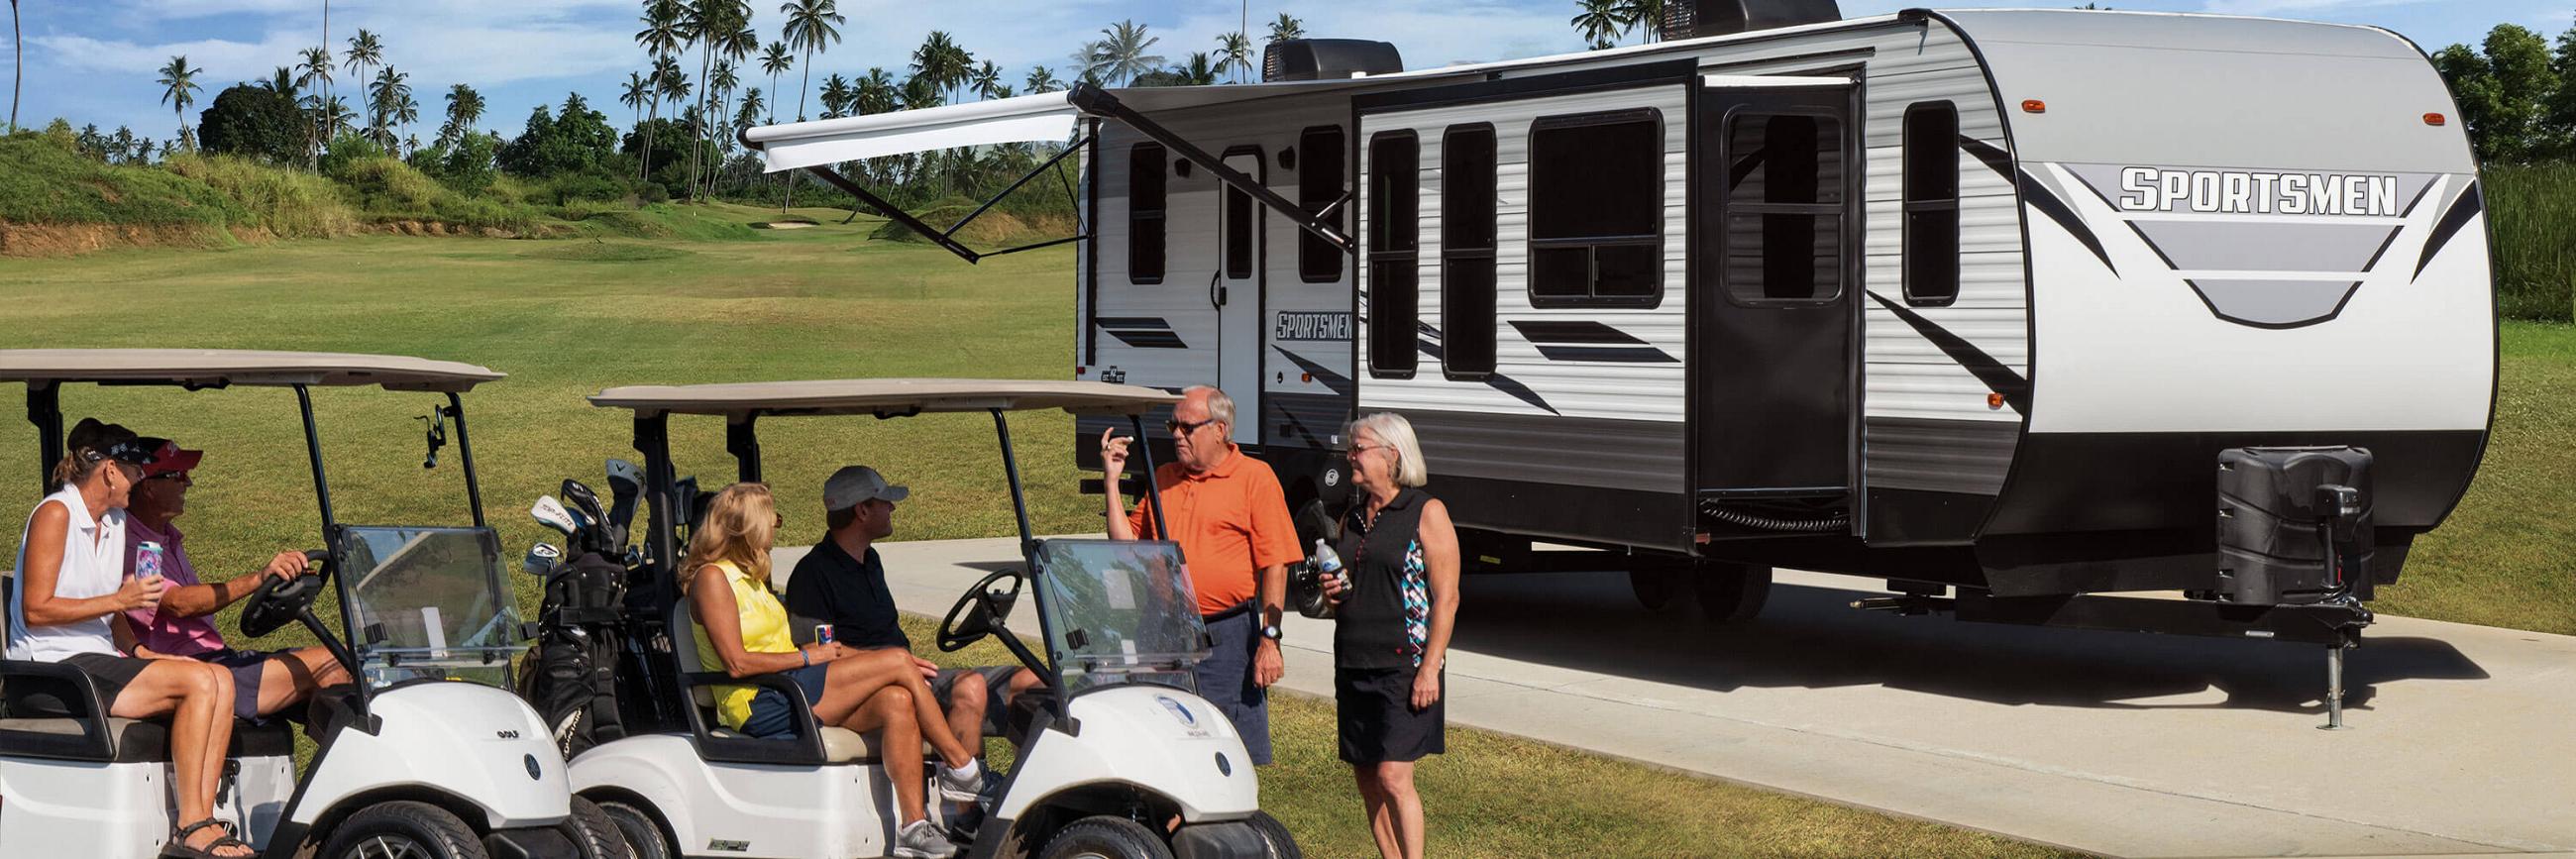 2022 KZ RV Sportsmen 364BH Destination Travel Trailer with Golfers at Golf Course